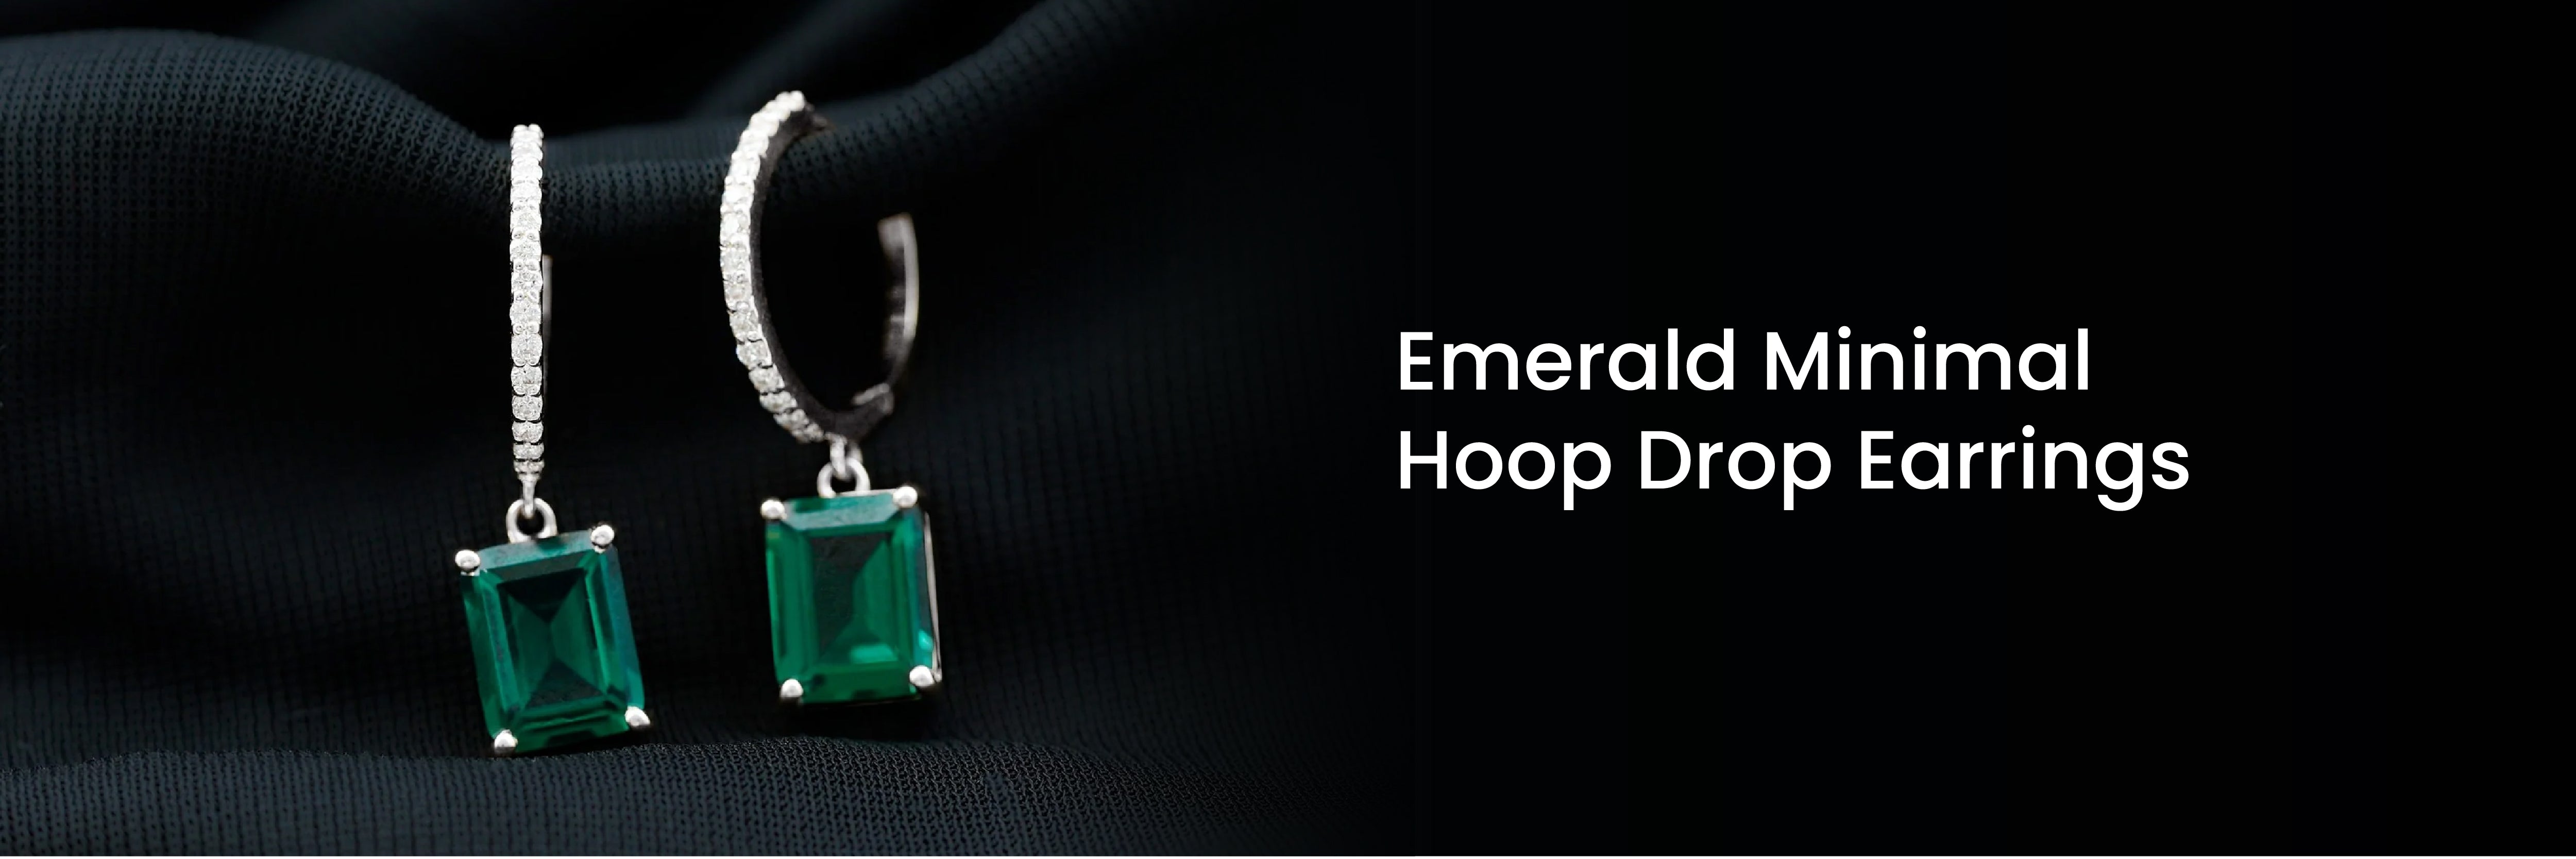 Emerald Minimal Hoop Drop Earrings